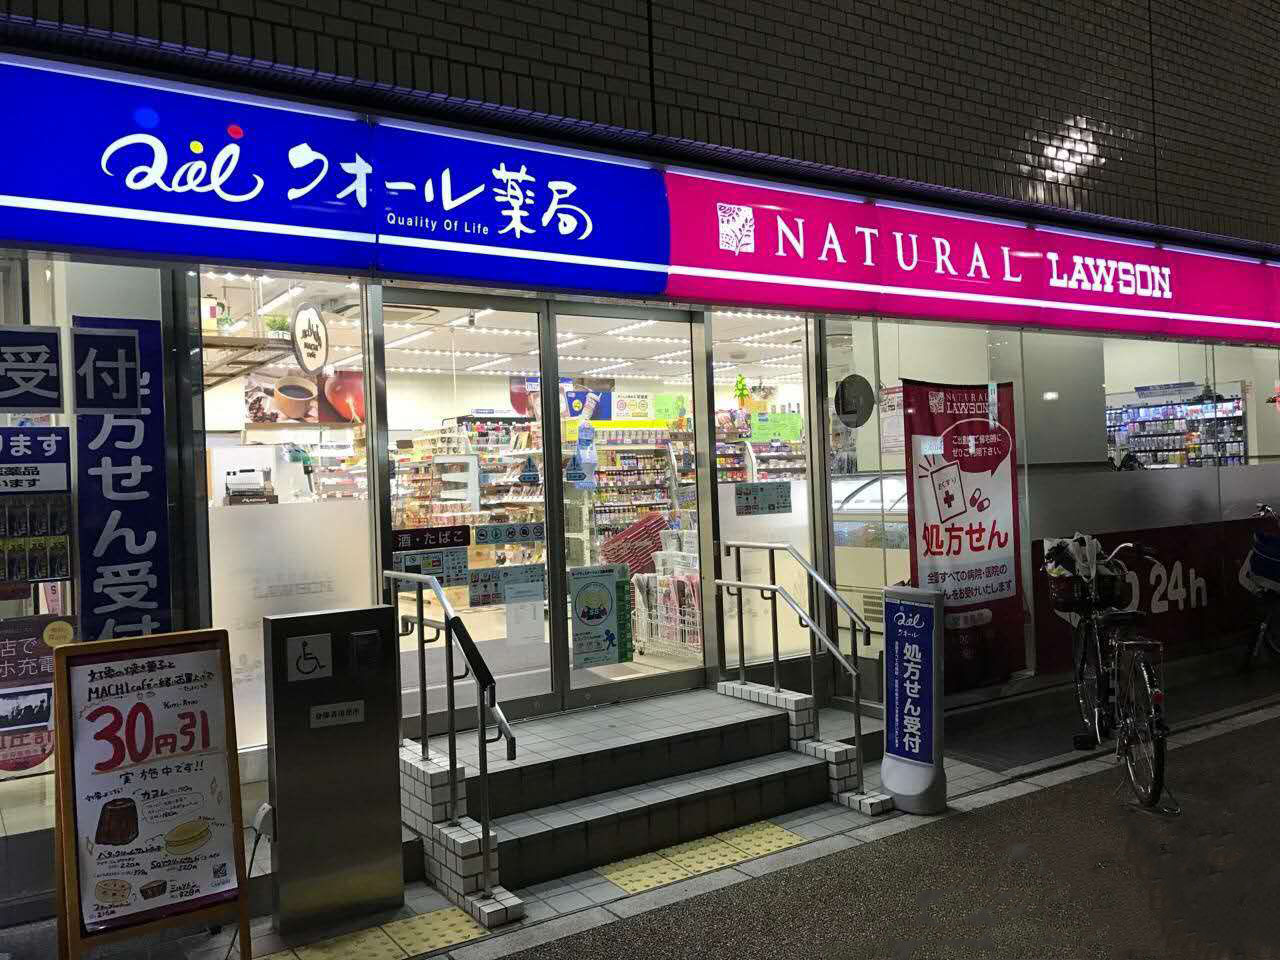 主题:看日本便利店活跃化的新业态及新型店铺